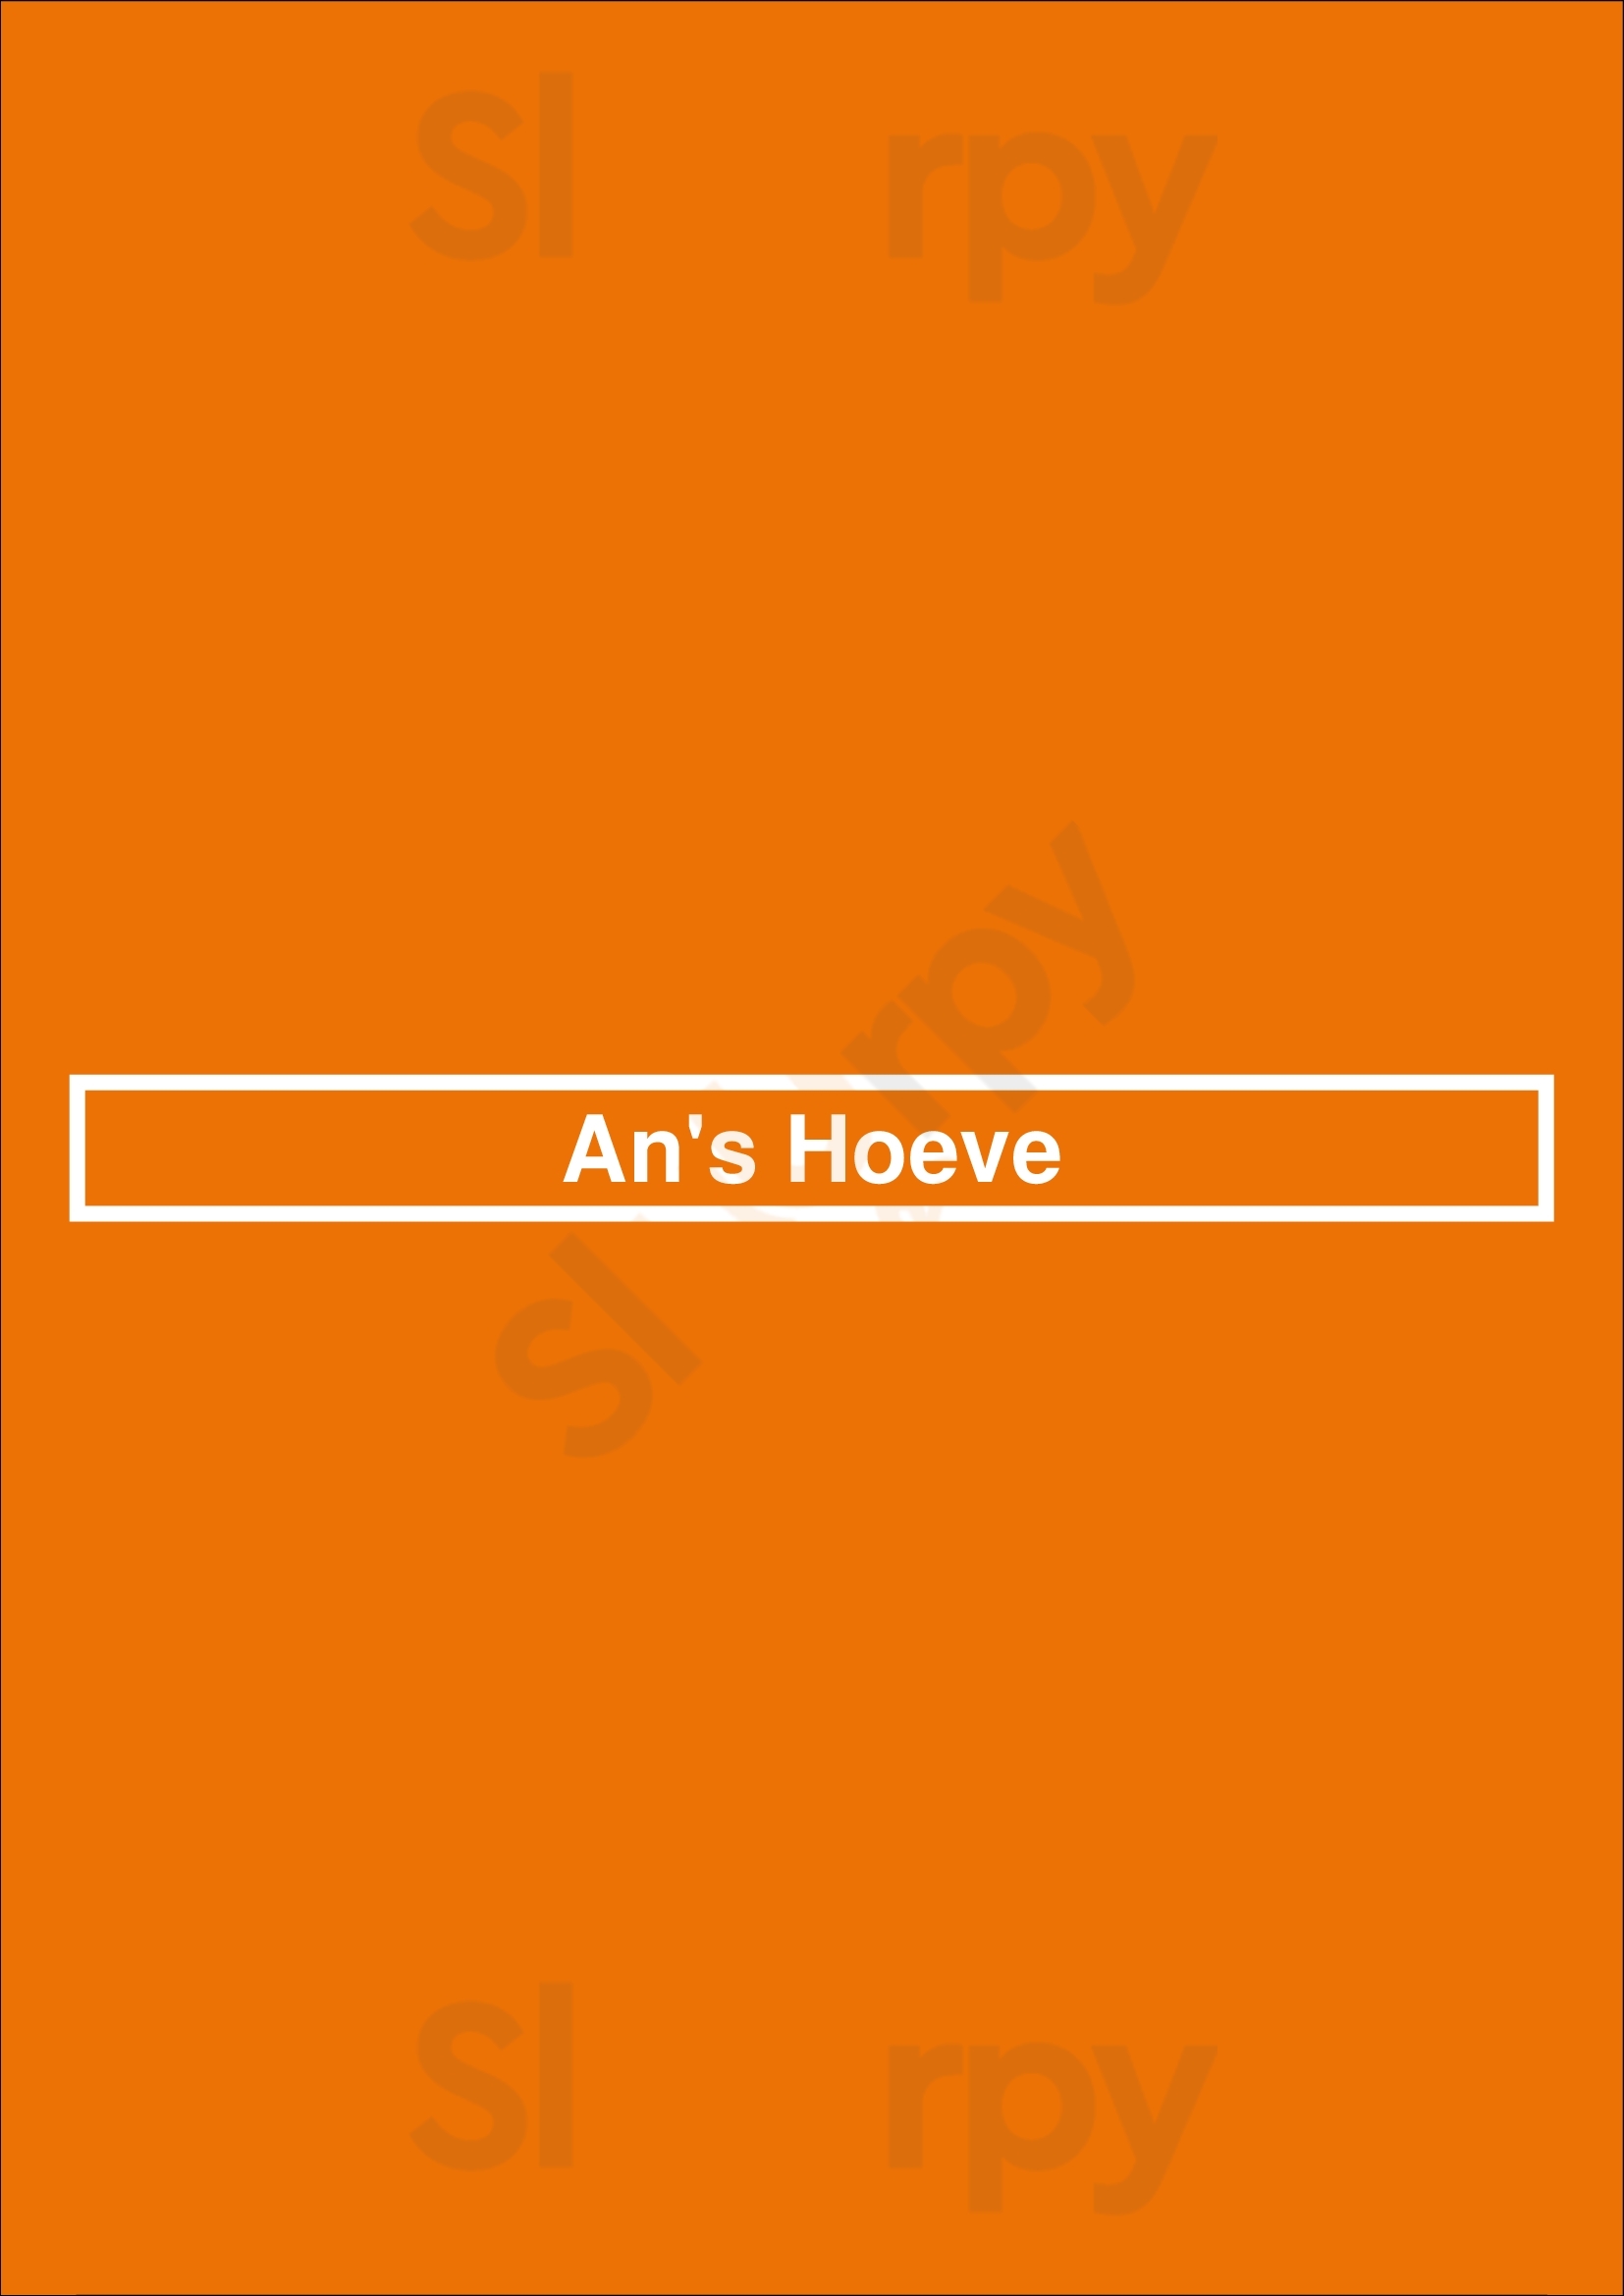 An's Hoeve Anvers Menu - 1